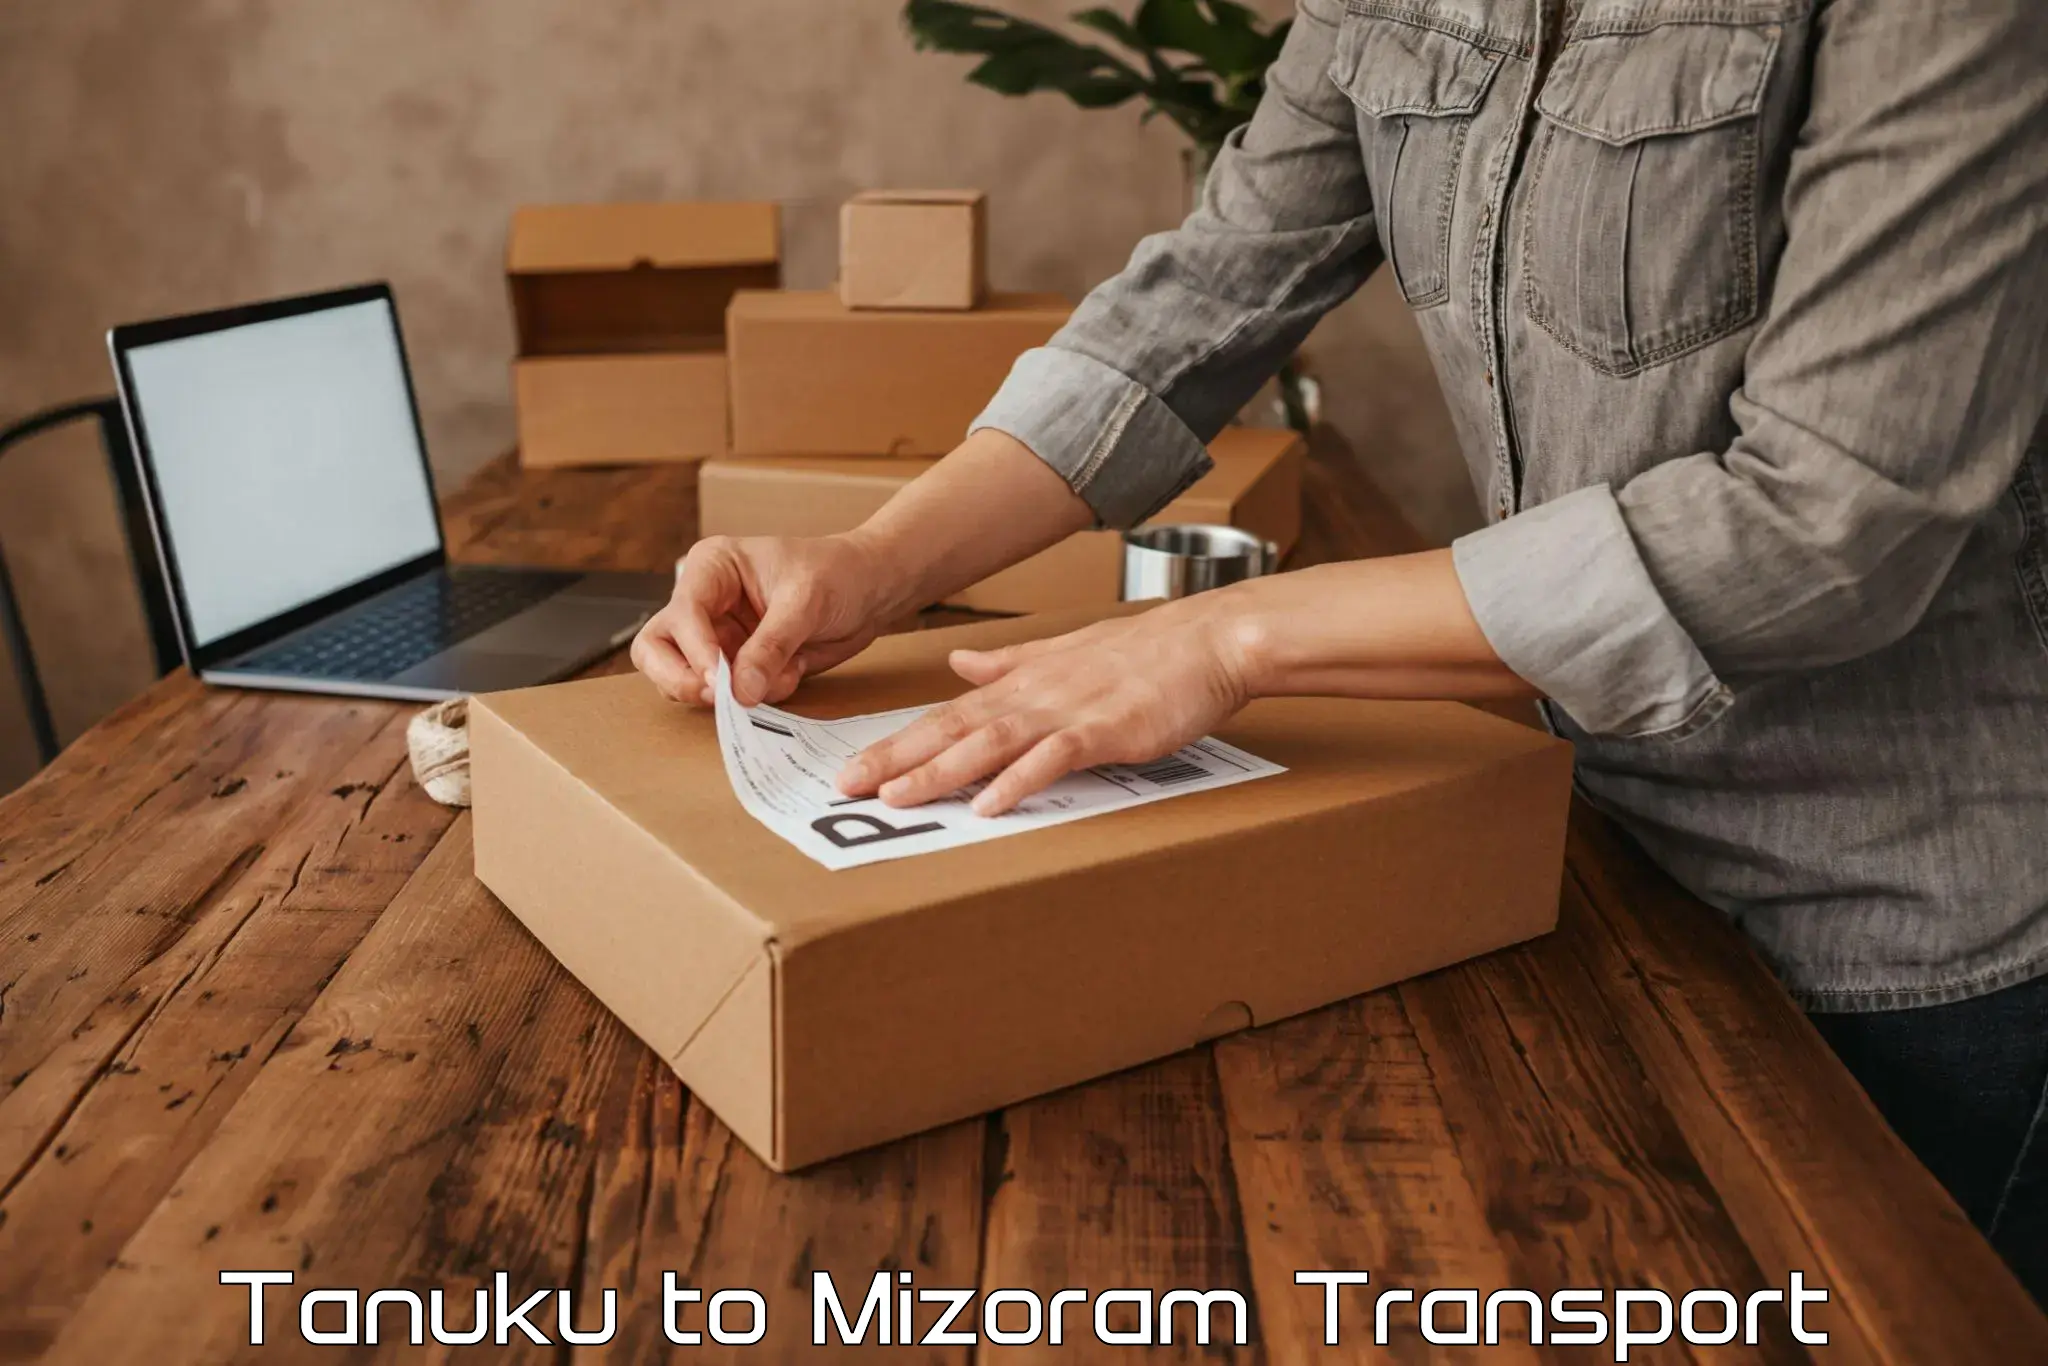 Cargo transport services Tanuku to Aizawl